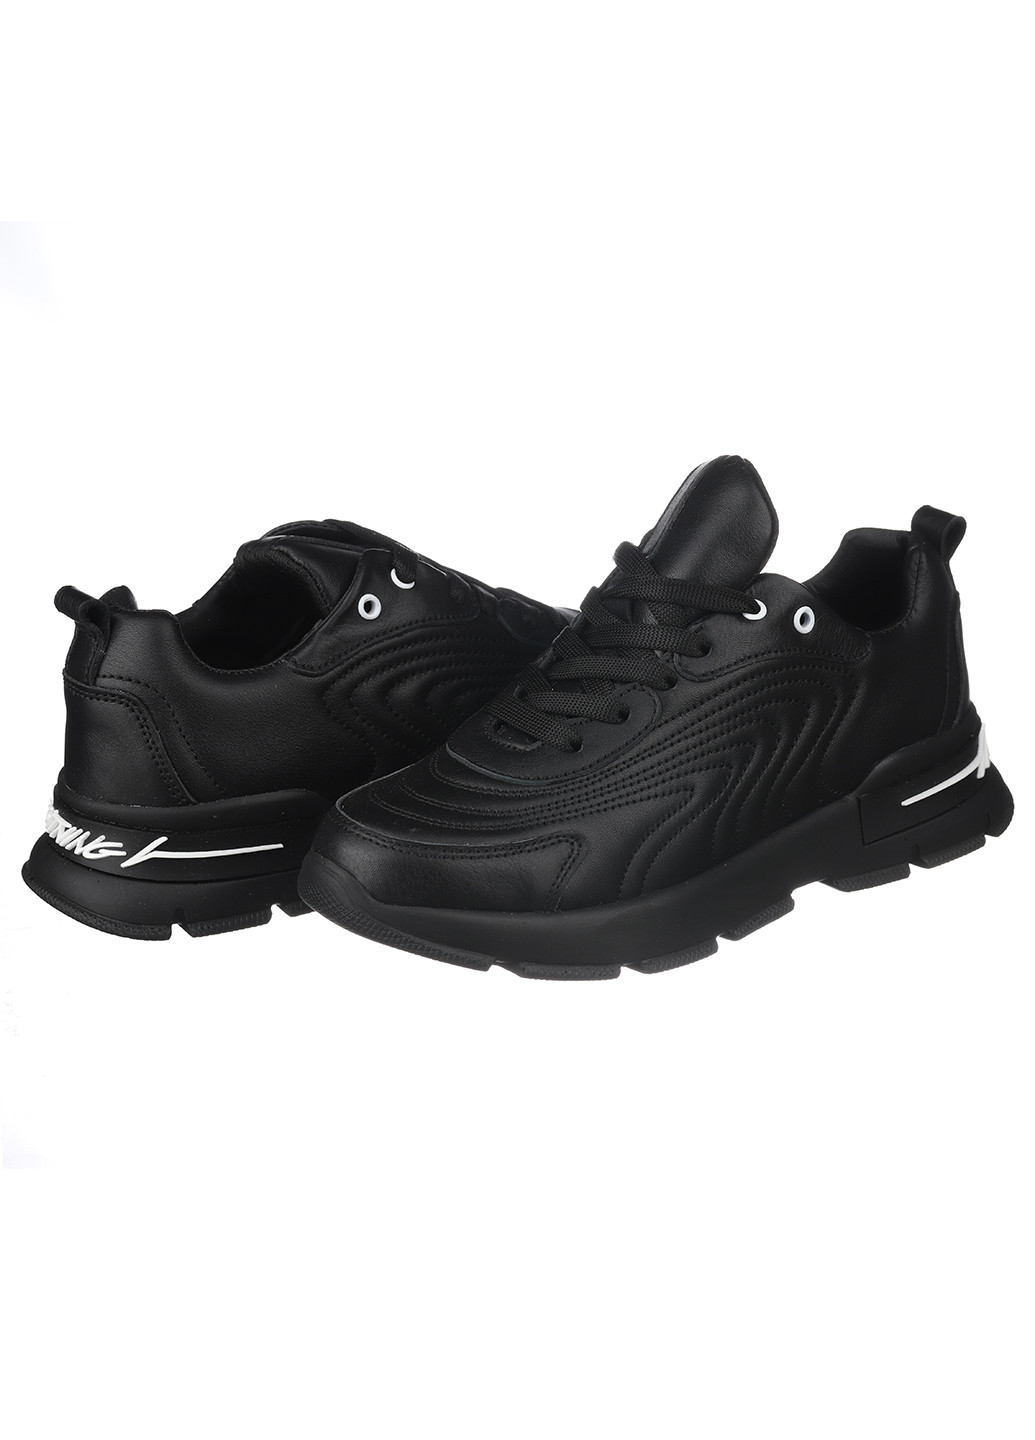 Черные демисезонные кроссовки 1027-01 Trendy